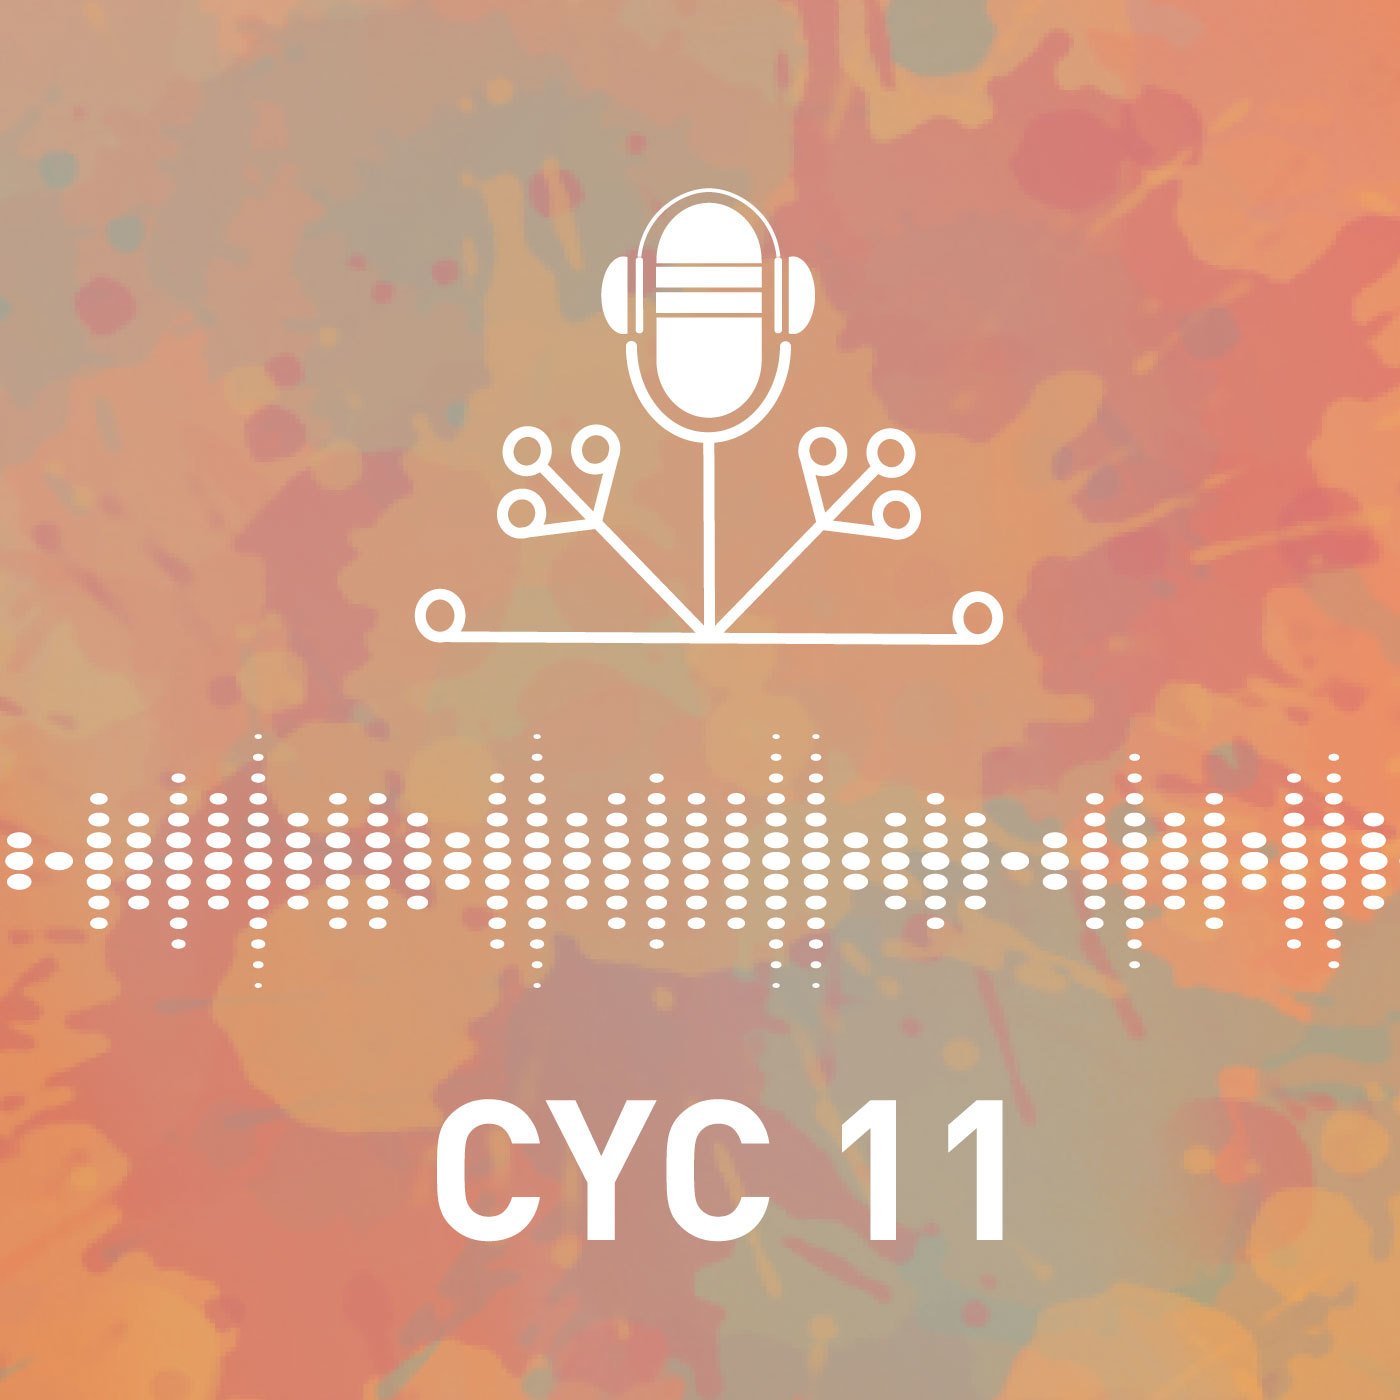 cyc 11